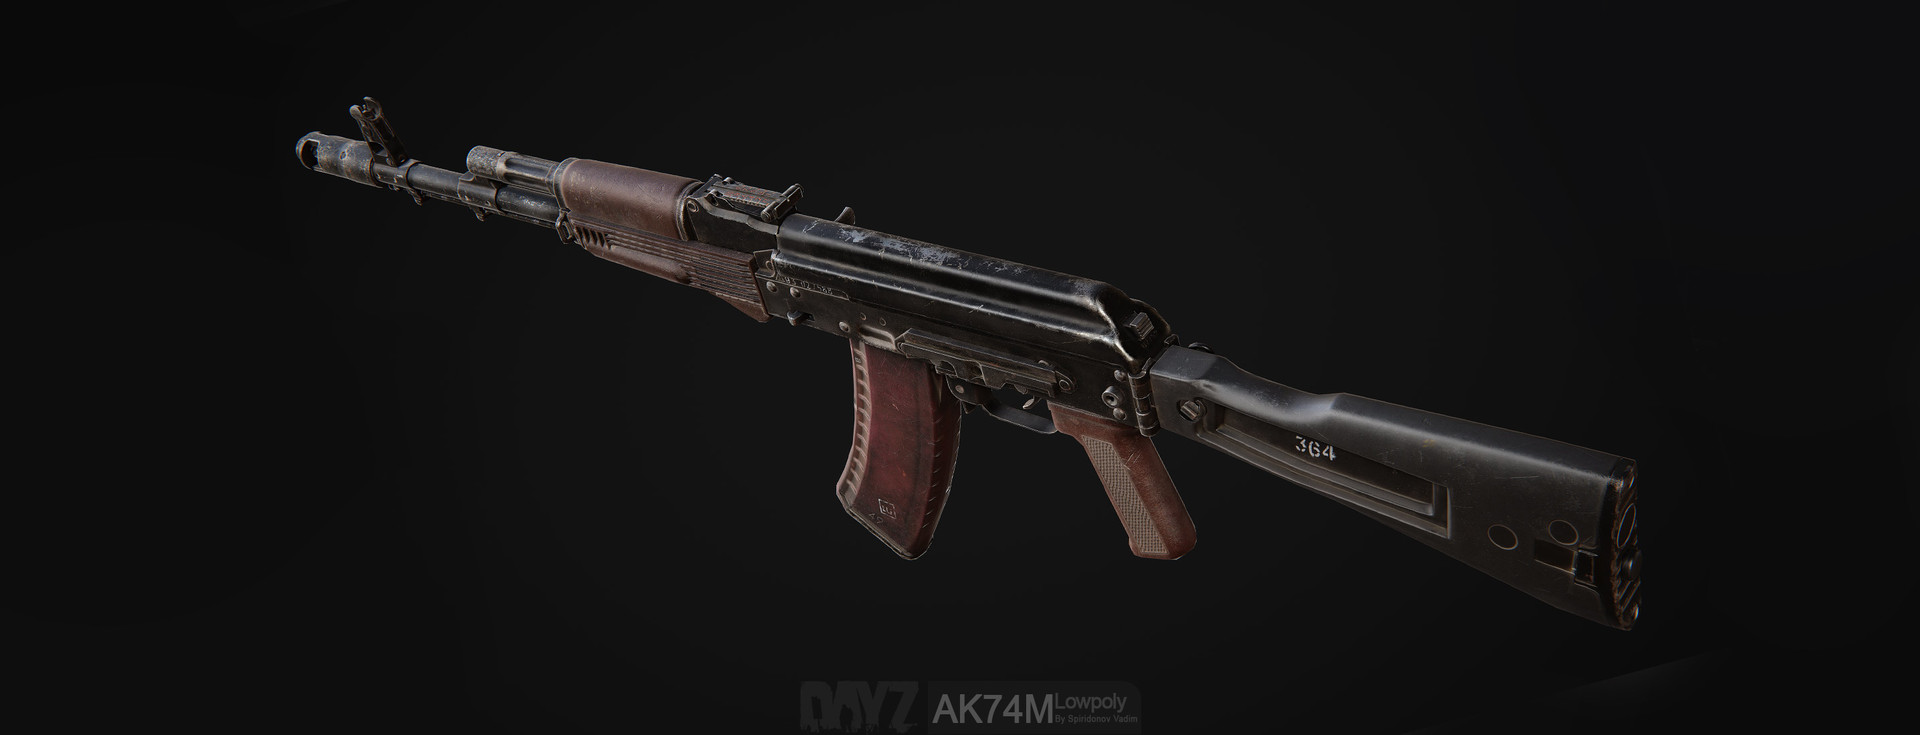 Ak74m assault rifle для fallout 4 фото 72